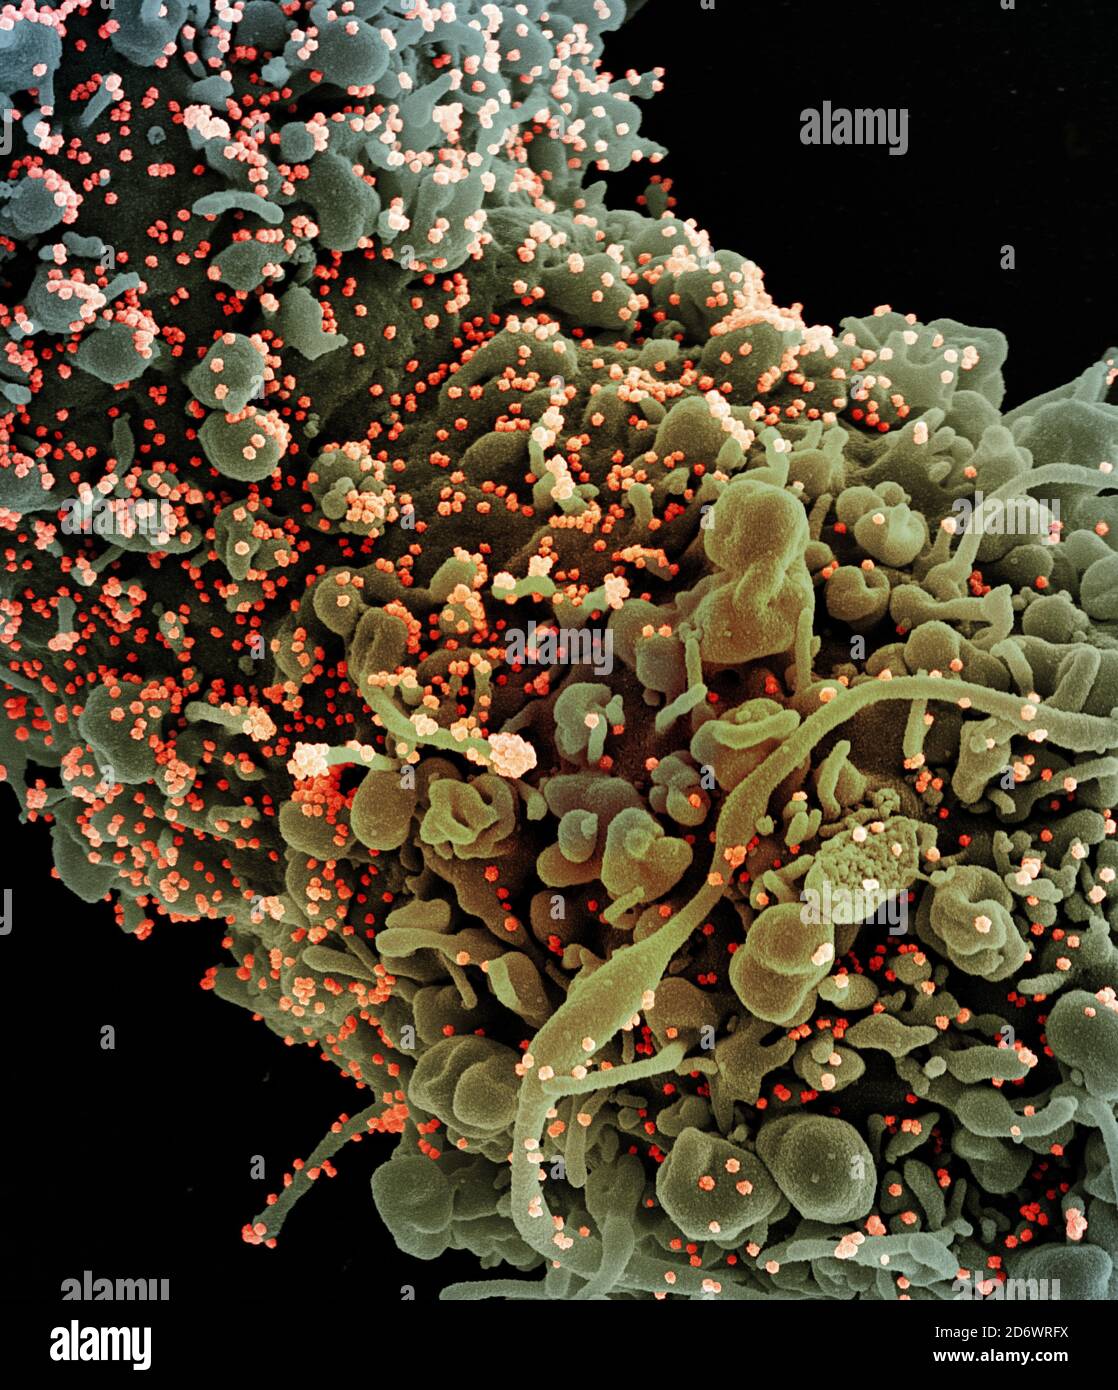 Micrografia elettronica a scansione colorata di una cellula che mostra segni morfologici di apoptosi, infettata con particelle di virus SARS-COV-2 (arancione), isolata Foto Stock